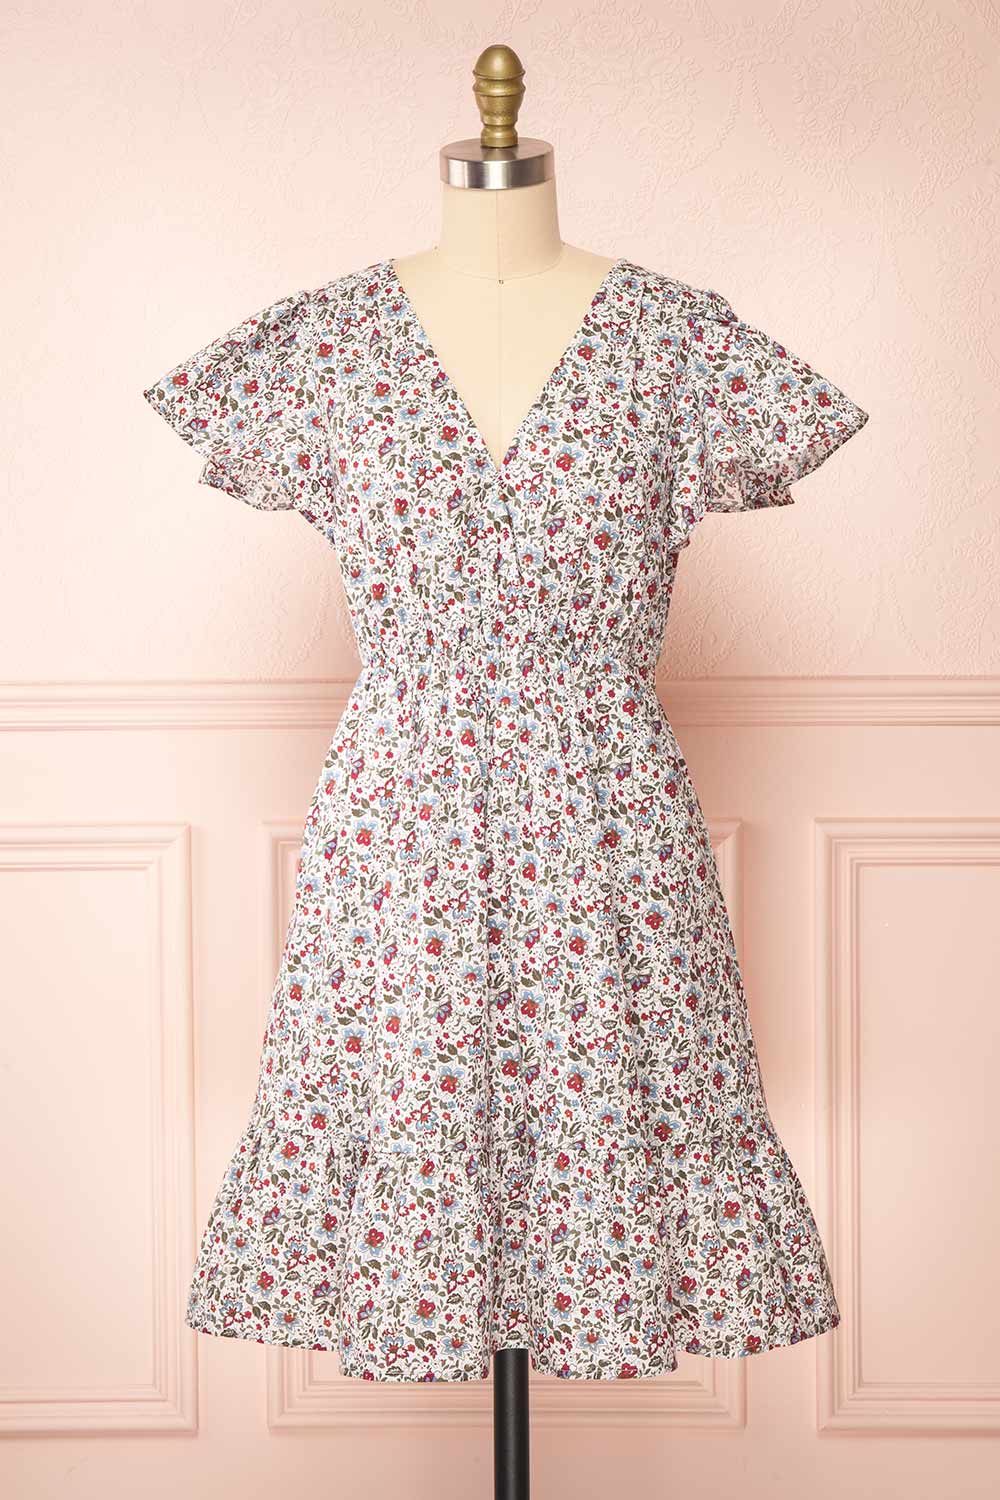 Menodis Short A-Line Floral Dress | Boutique 1861 front view